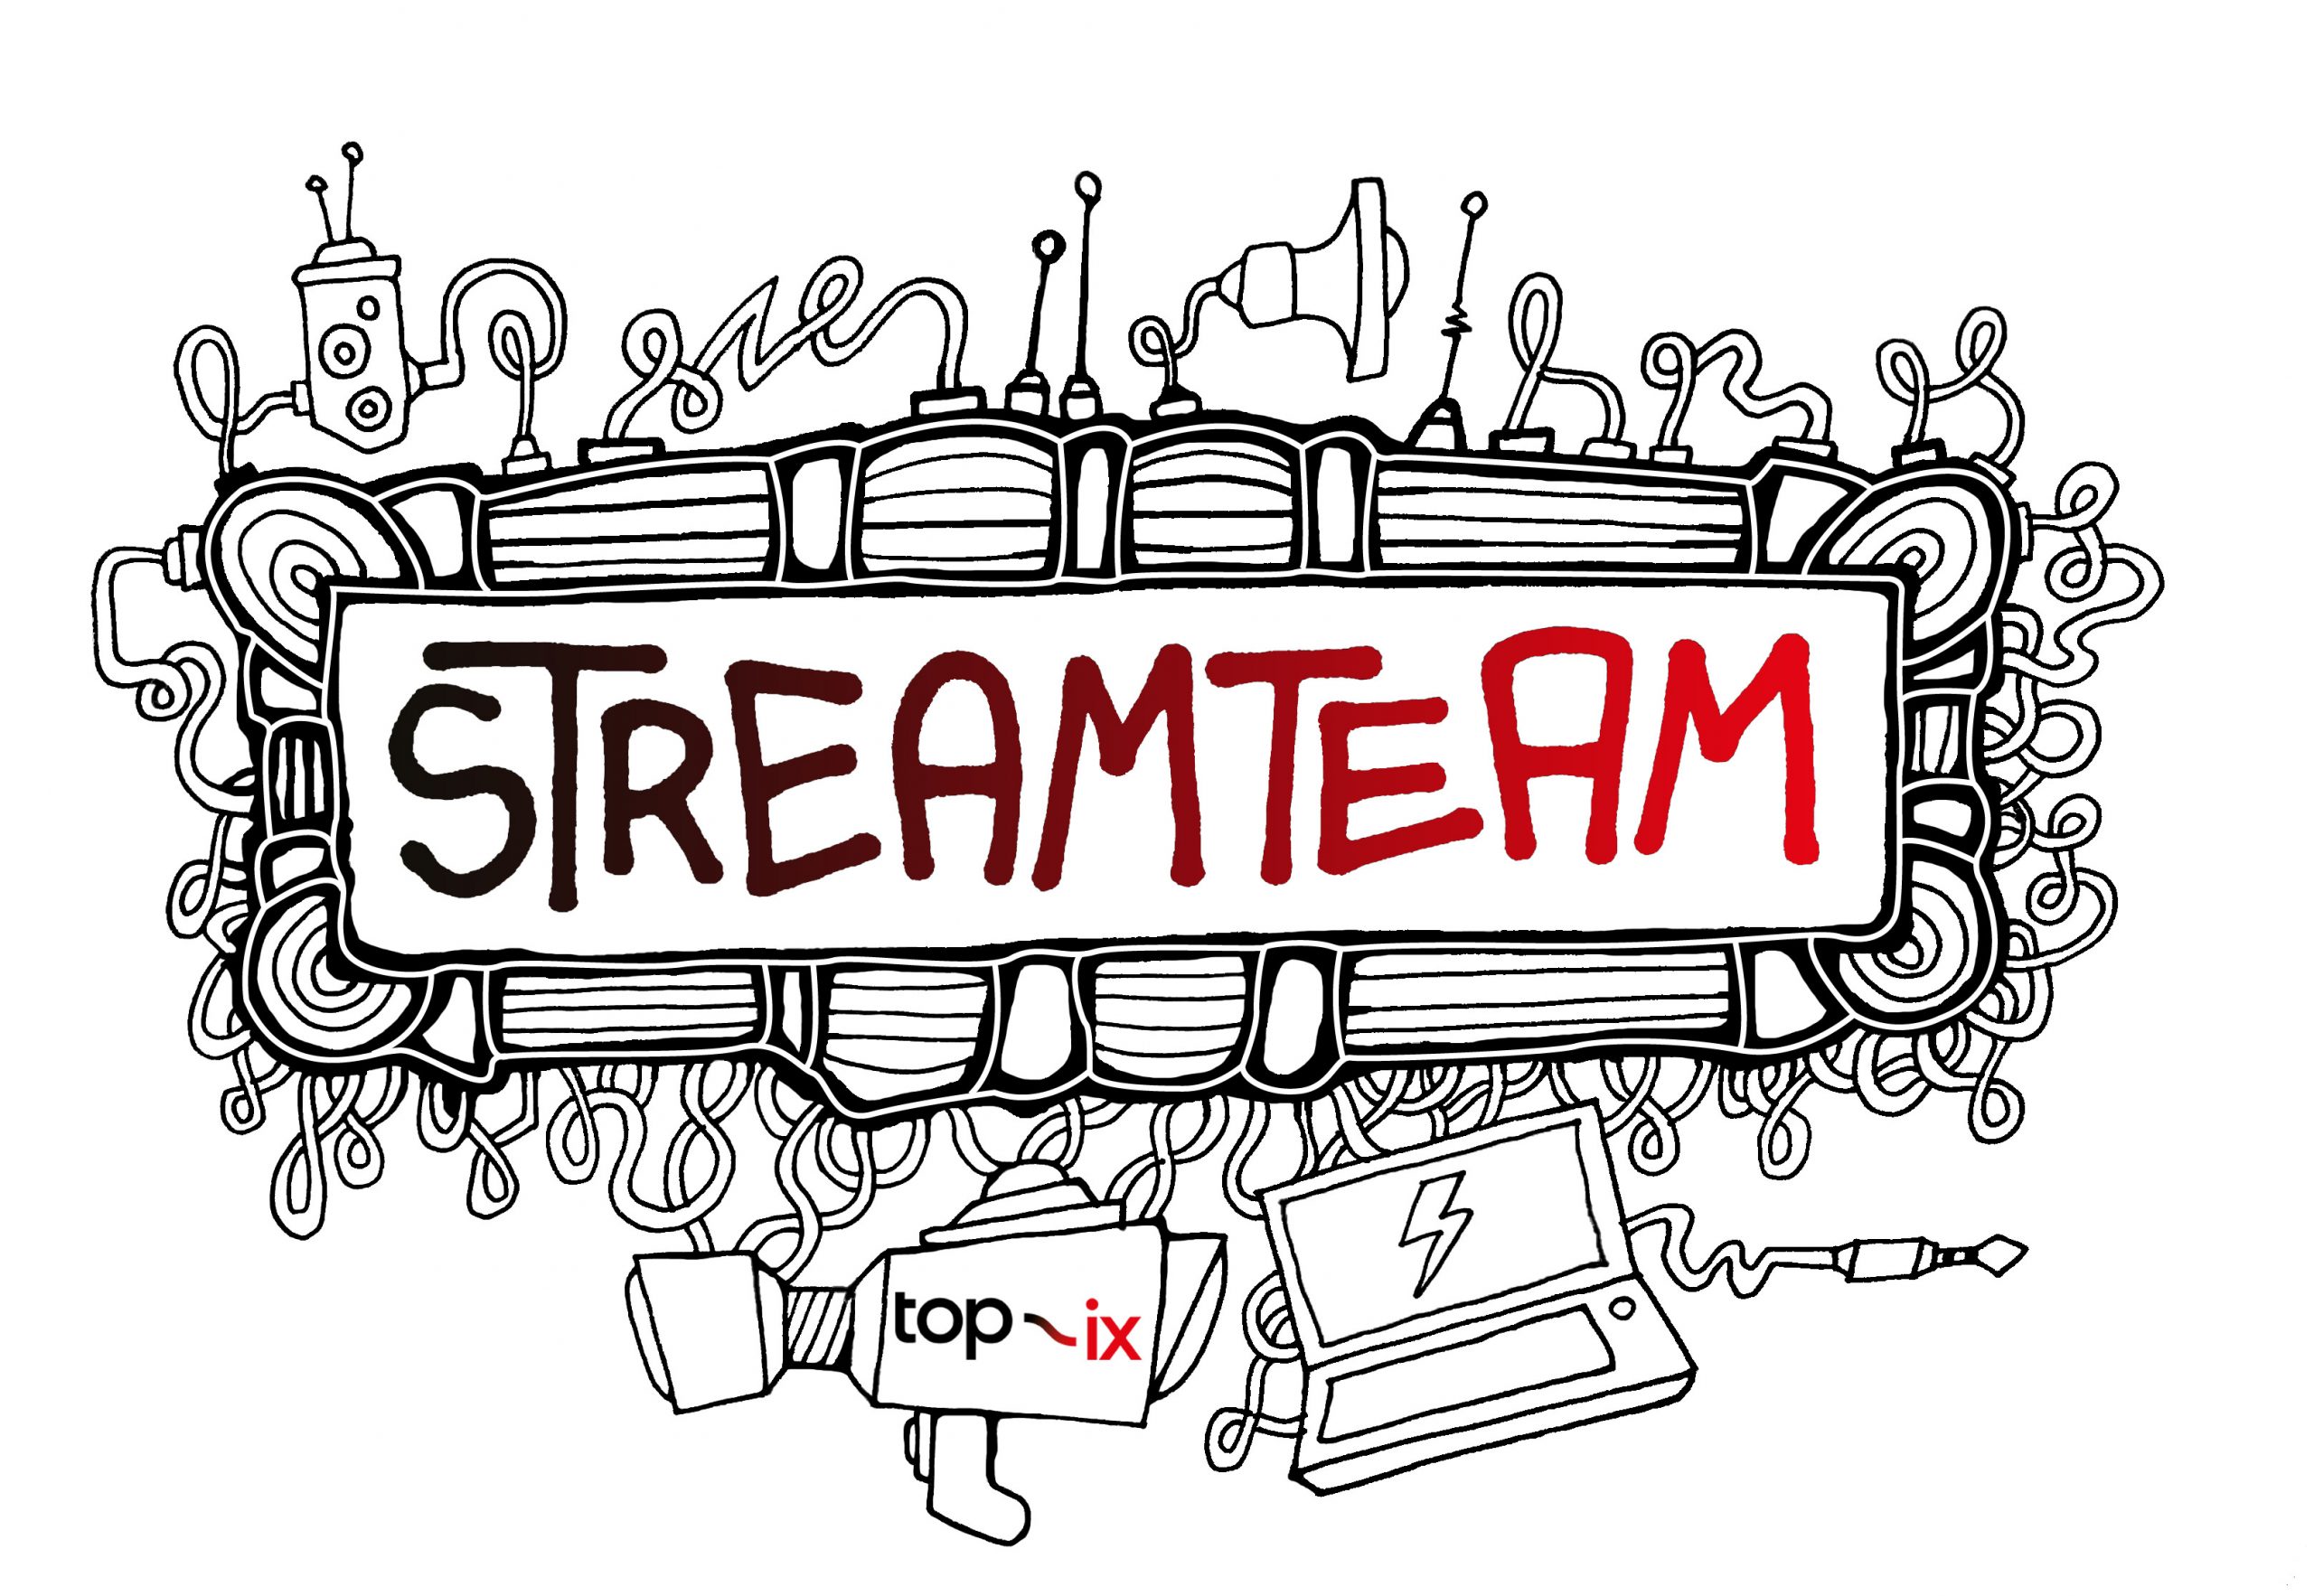 Illustrazione del StreamTeam